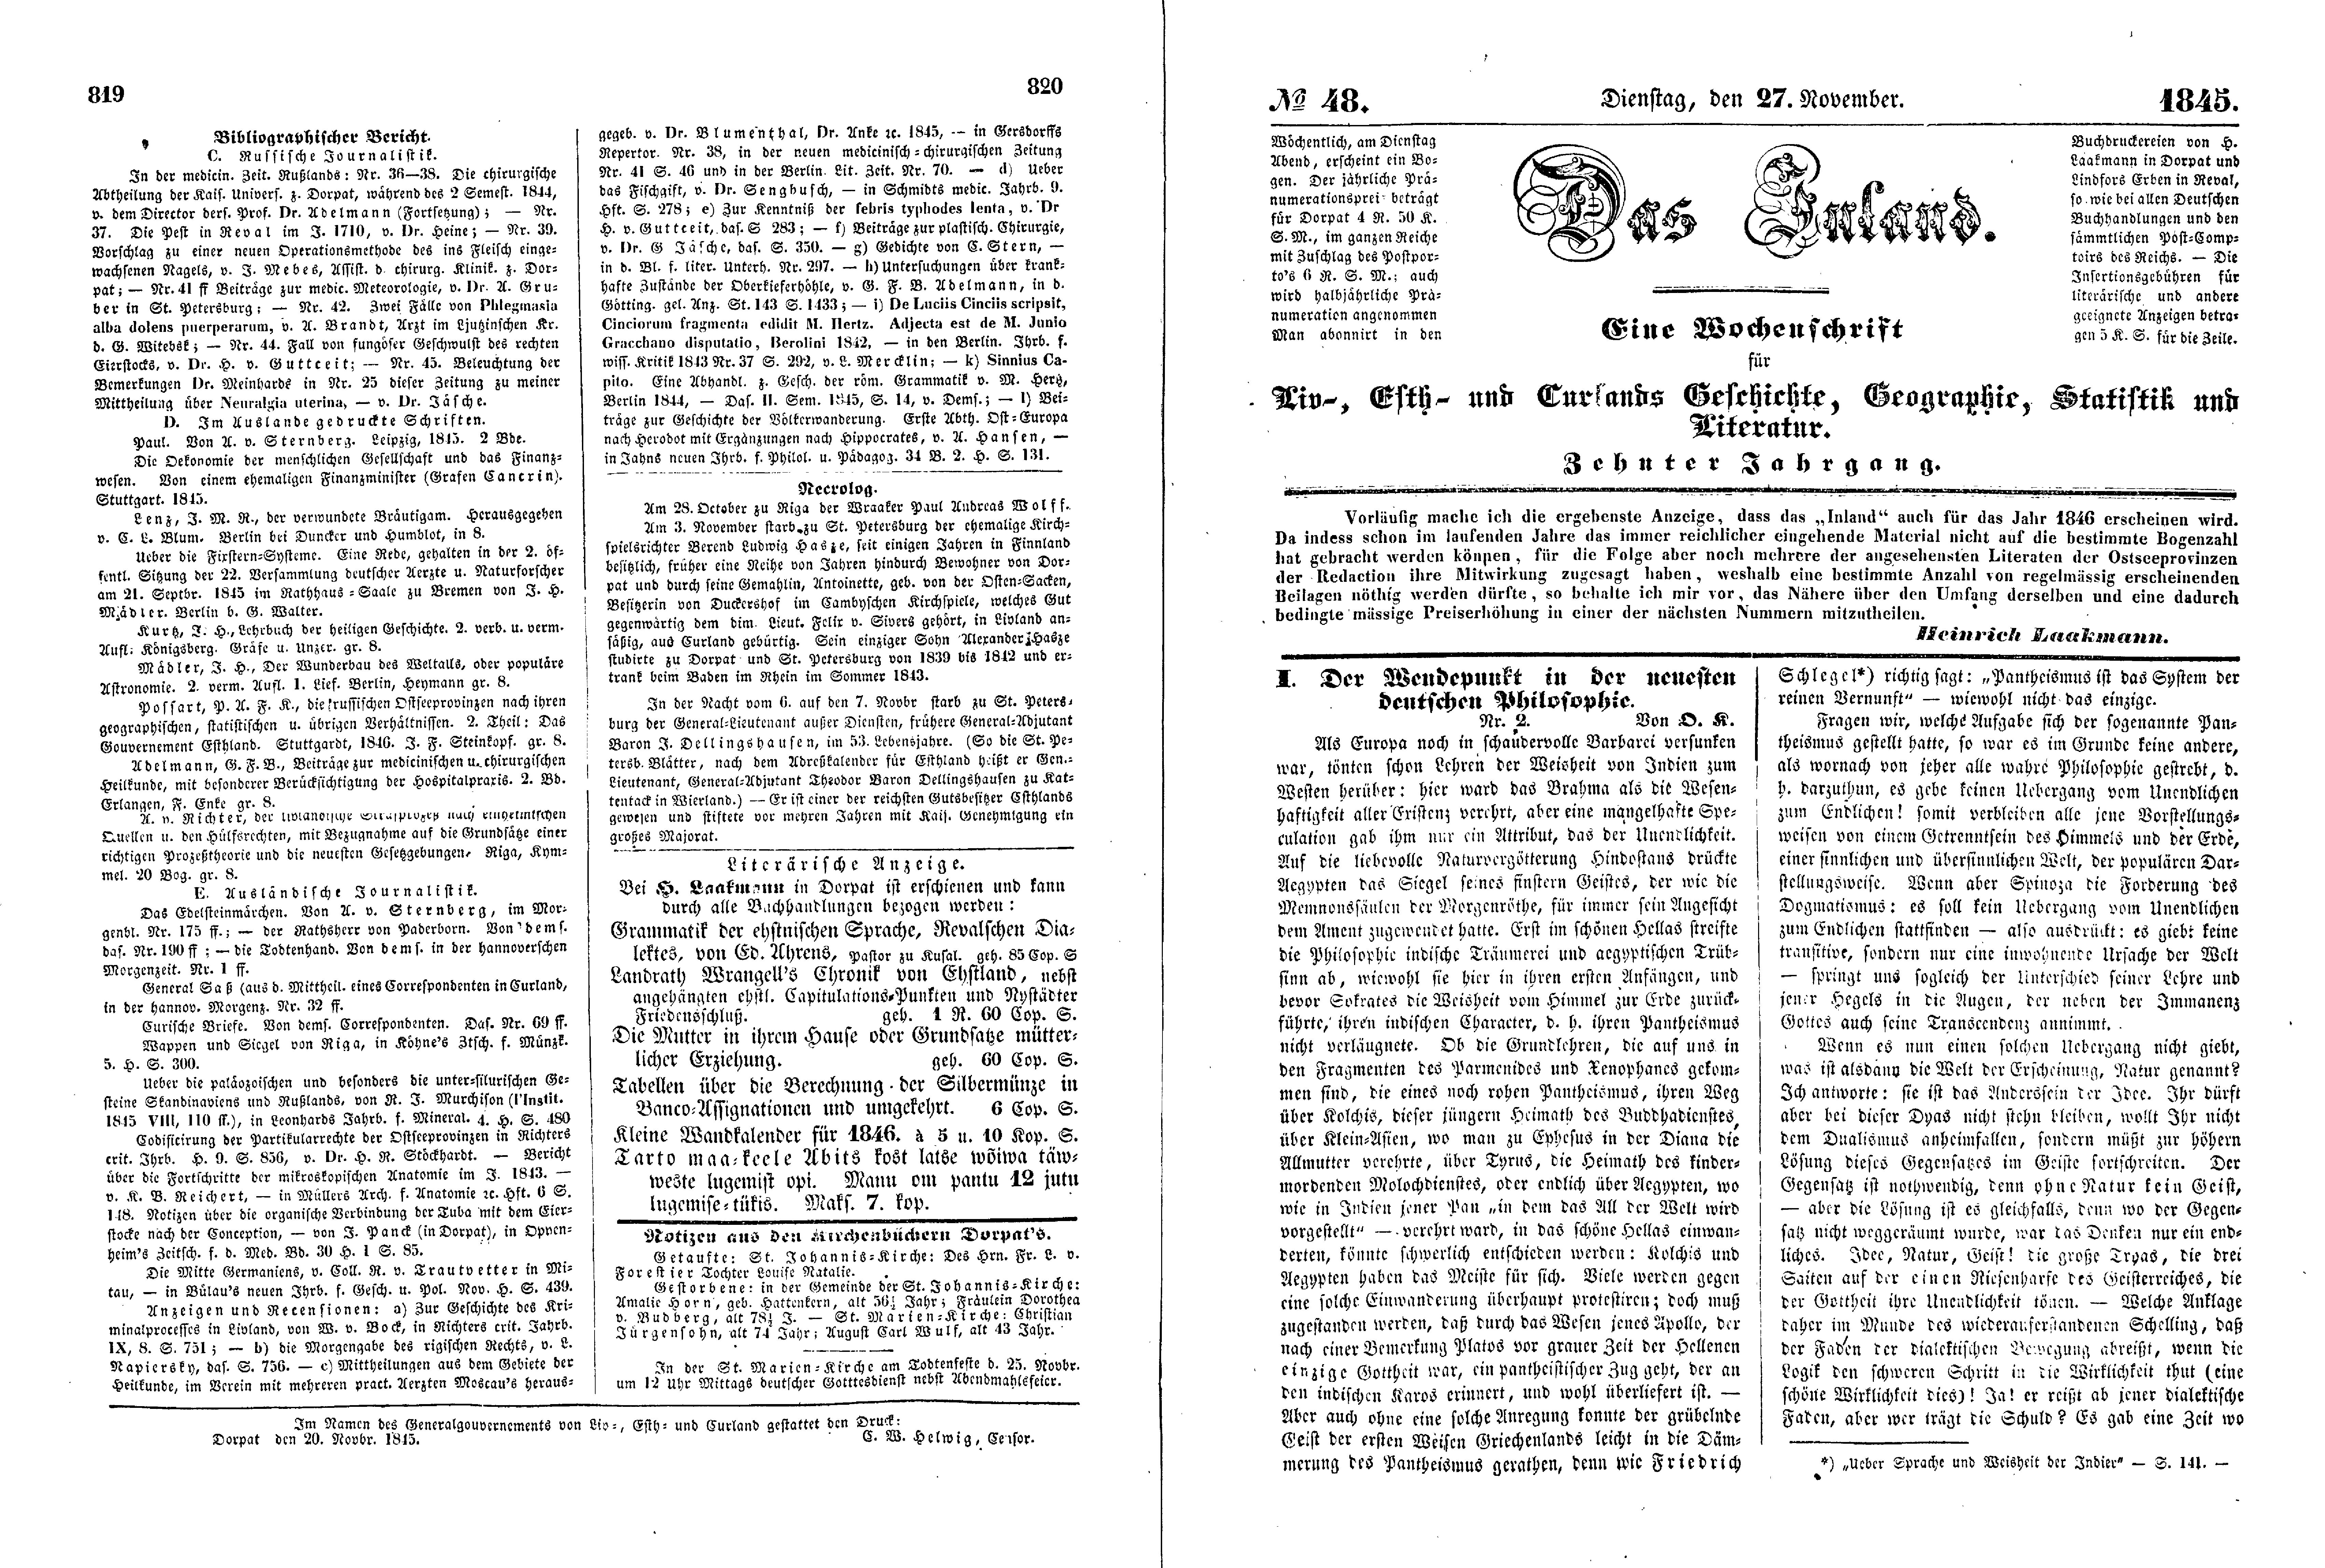 Der Wendepunkt in der neuesten deutschen Philosophie [2] (1845) | 1. (819-822) Main body of text